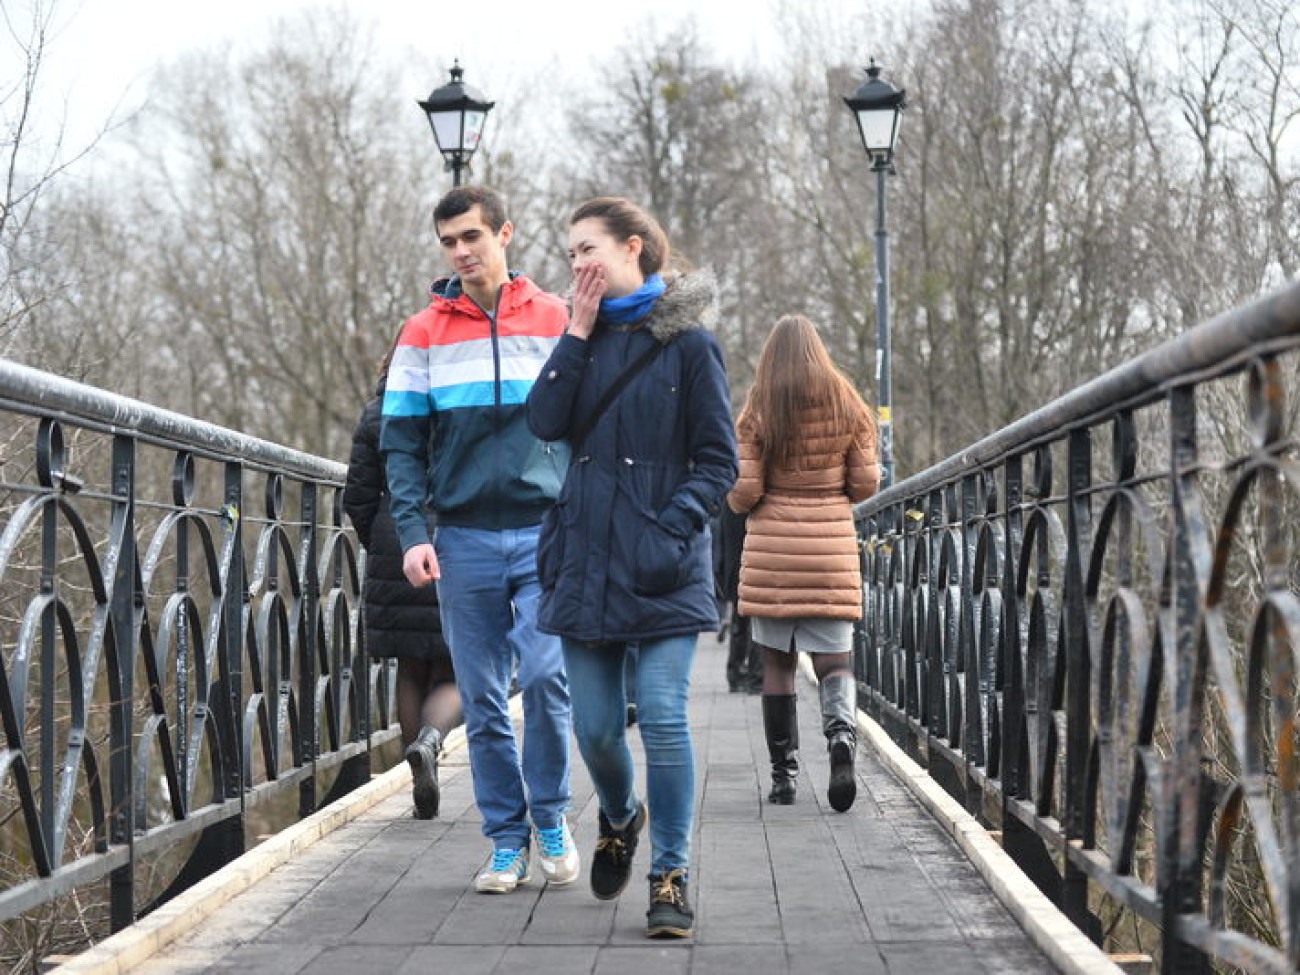 Мост влюбленных в Киеве получил новую жизнь